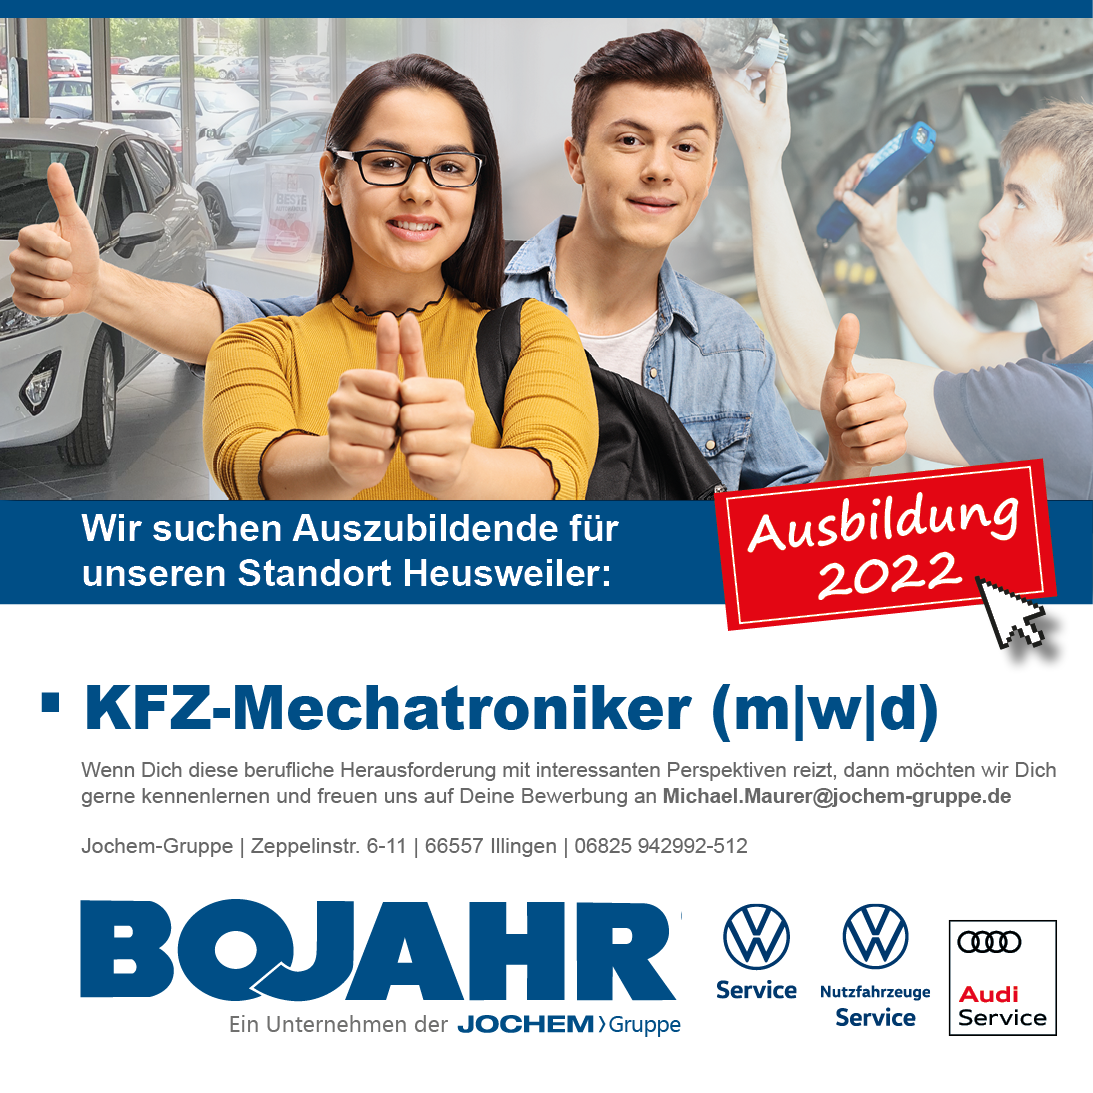 Stellenanzeige Auszubildende | Autohaus Bojahr GmbH | Heusweiler